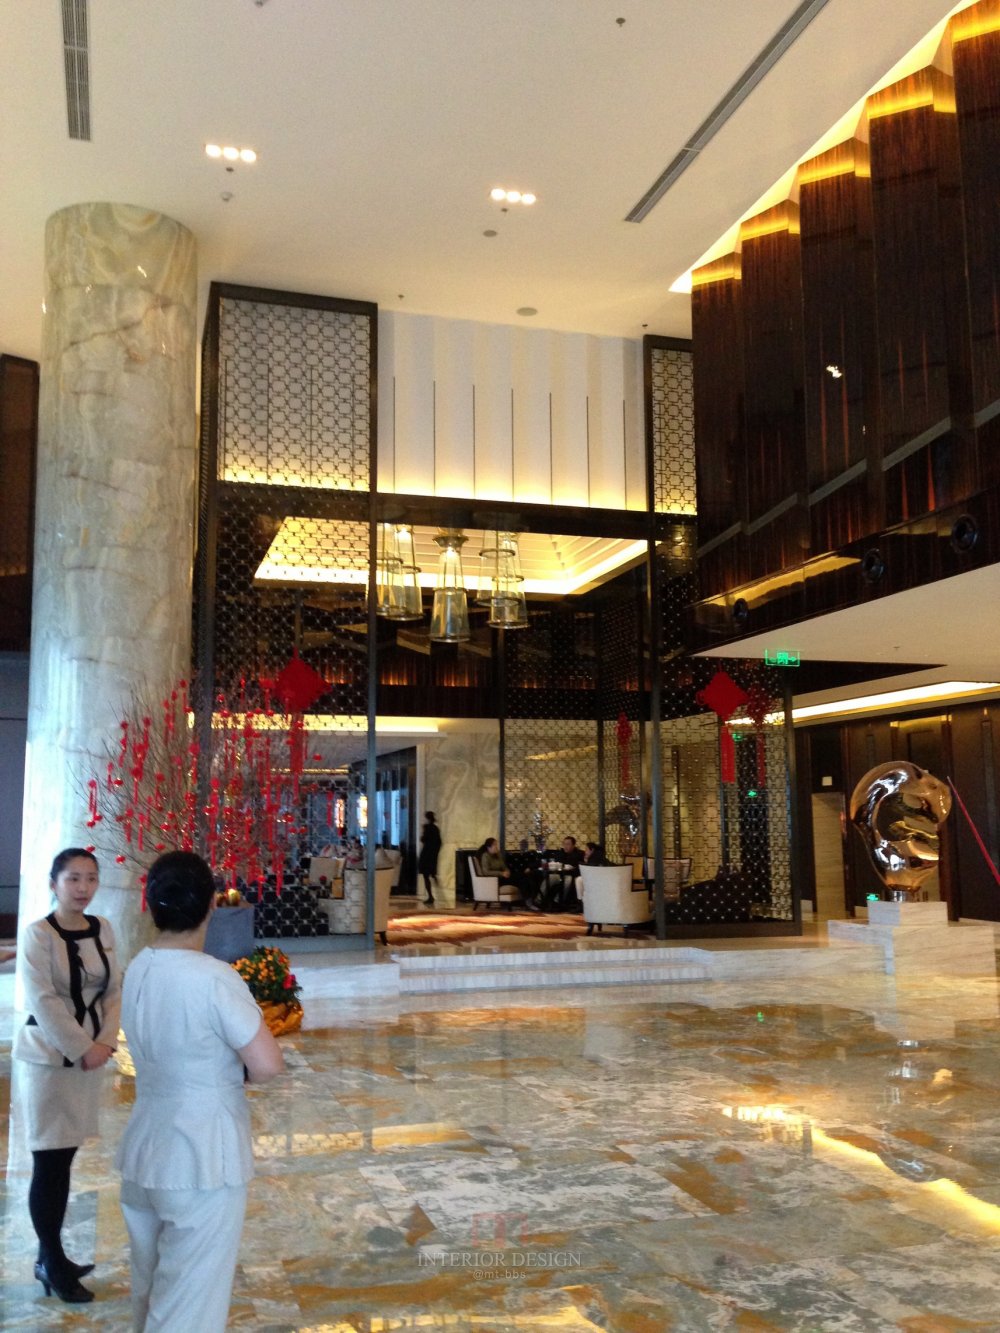 成都丽思卡尔顿酒店The Ritz-Carlton Chengdu(欢迎更新,高分奖励)_IMG_6358.JPG